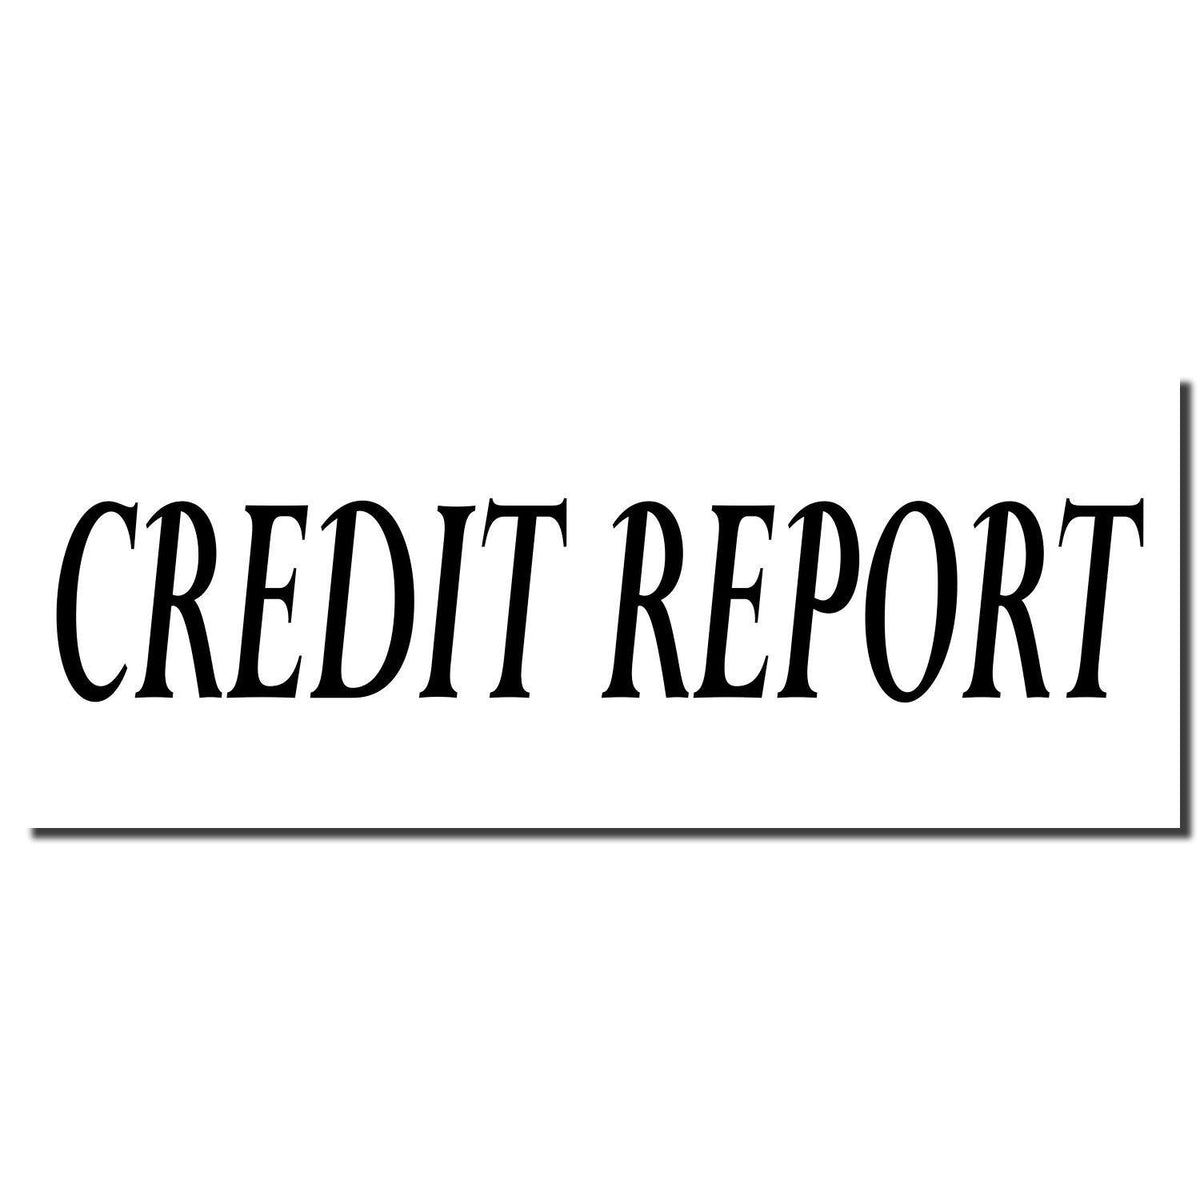 Enlarged Imprint Large Credit Report Rubber Stamp Sample